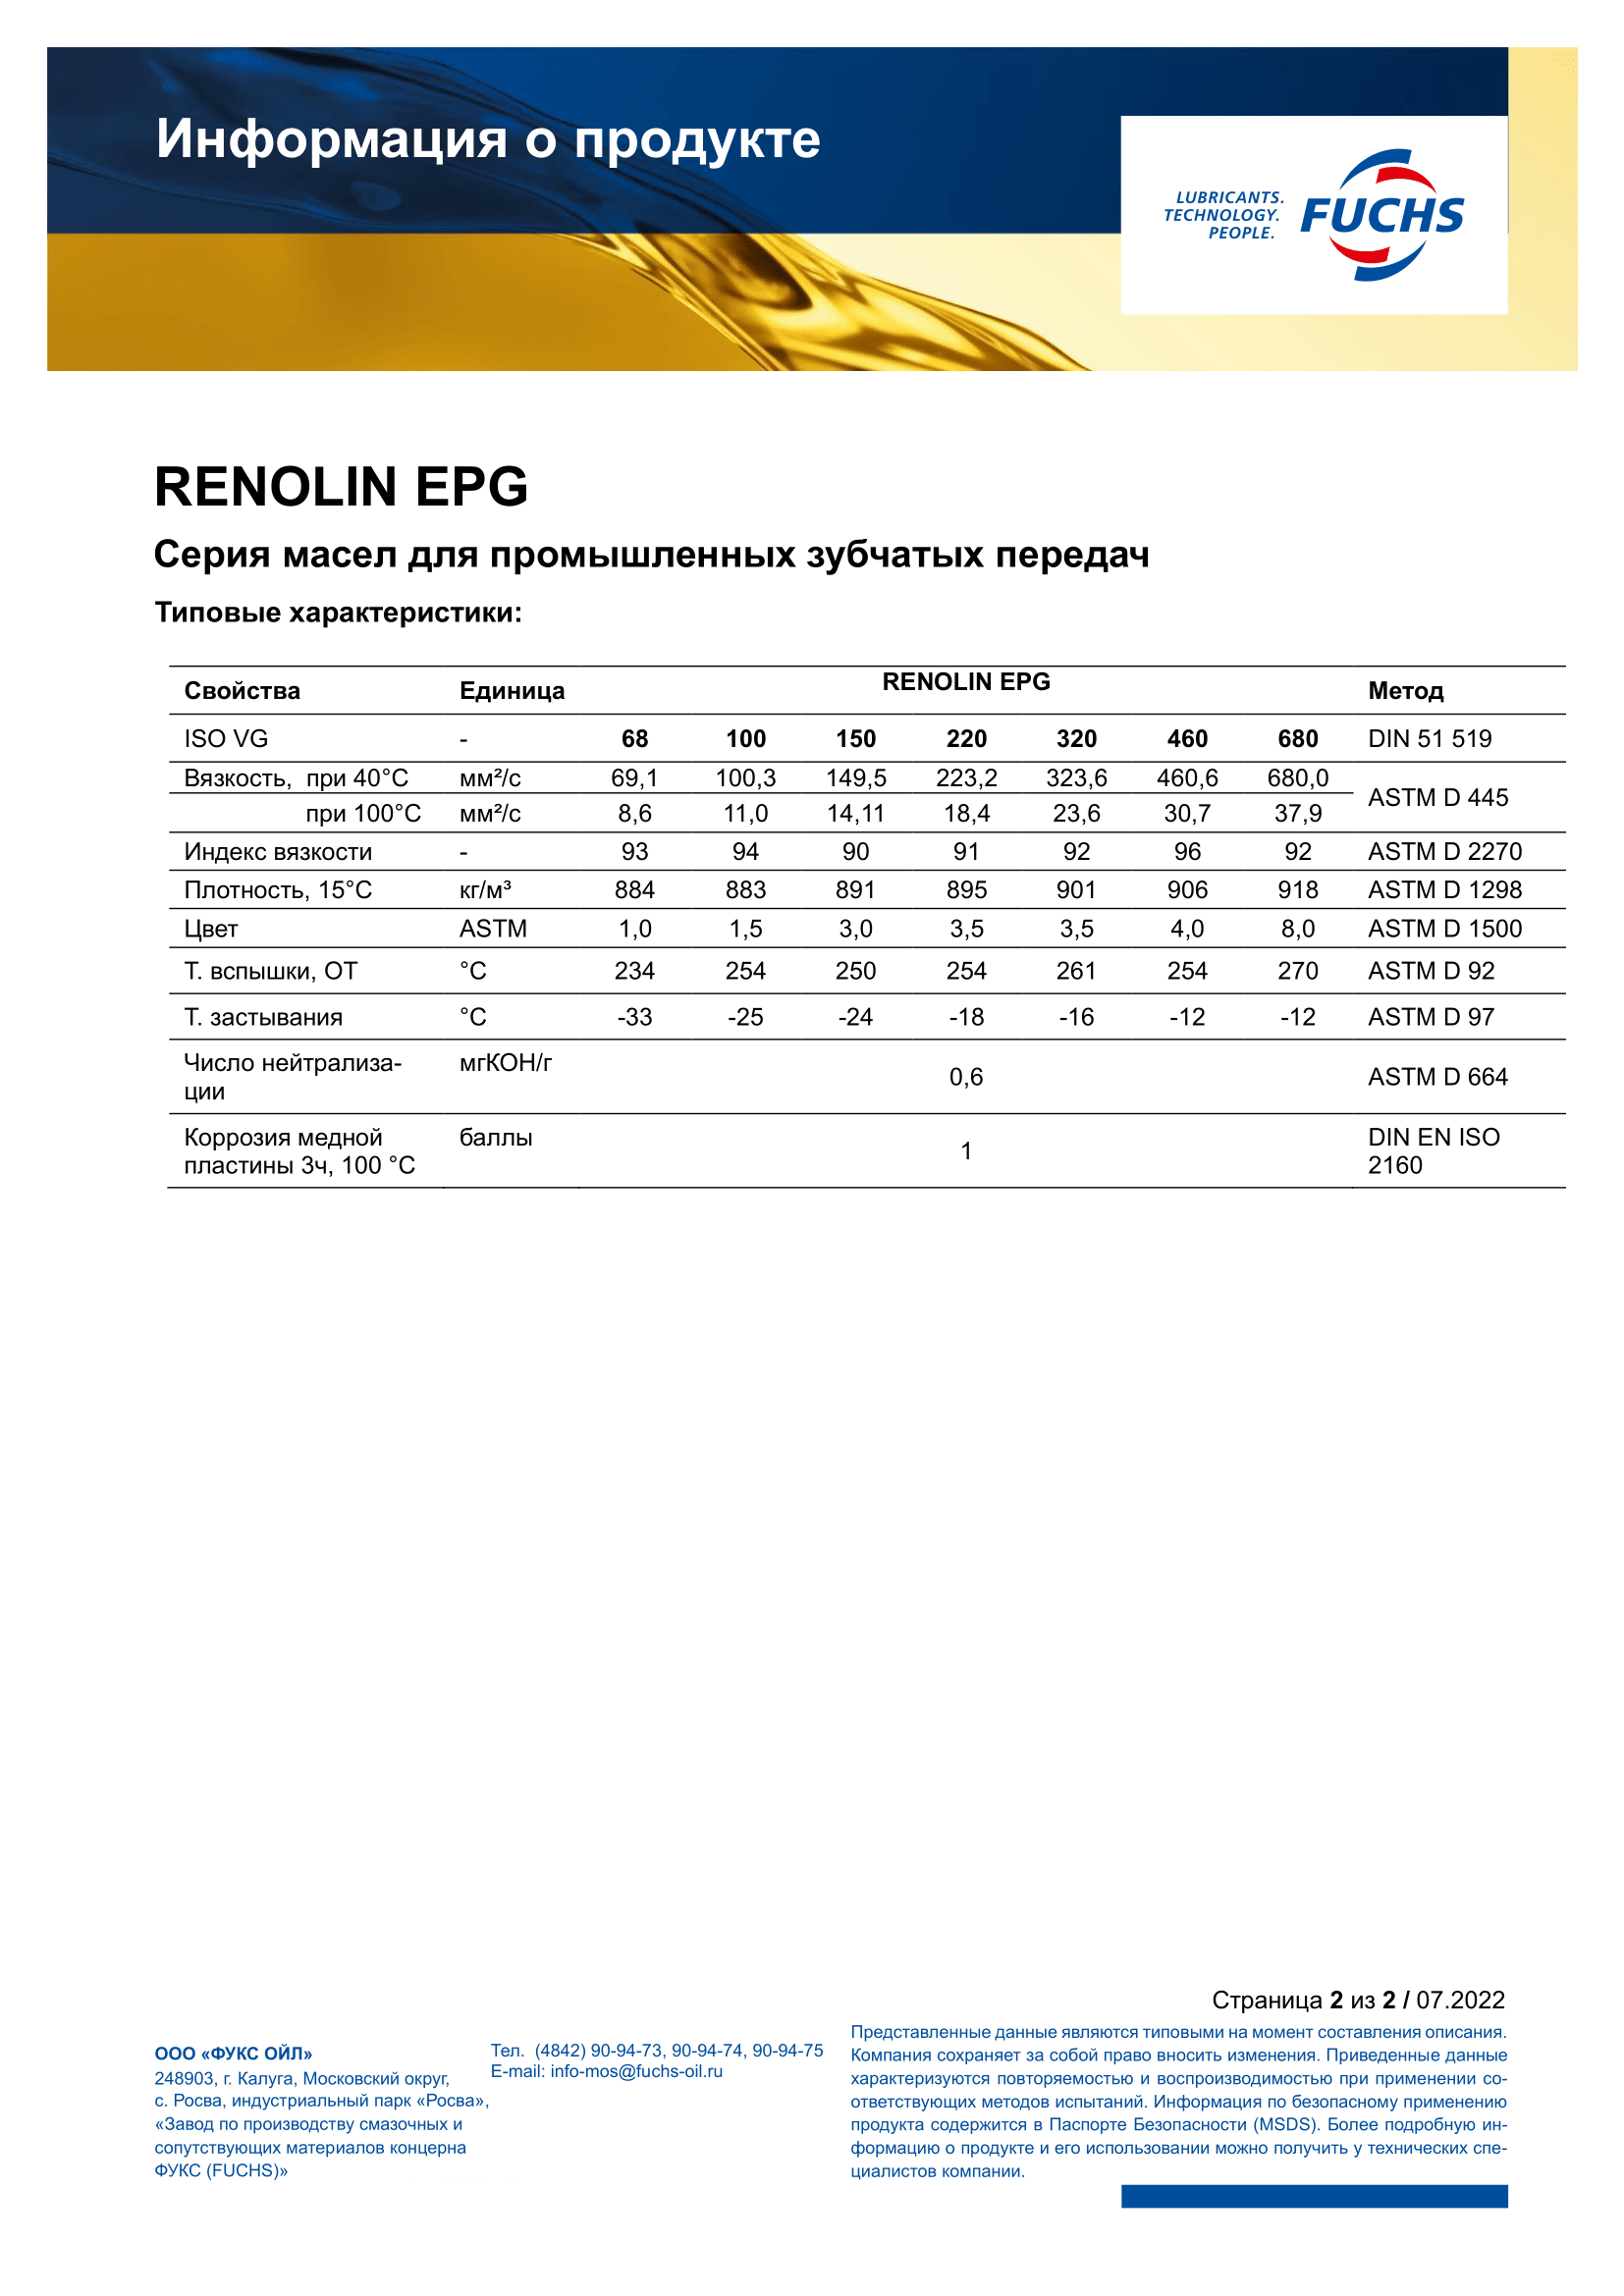 RENOLIN EPG 460